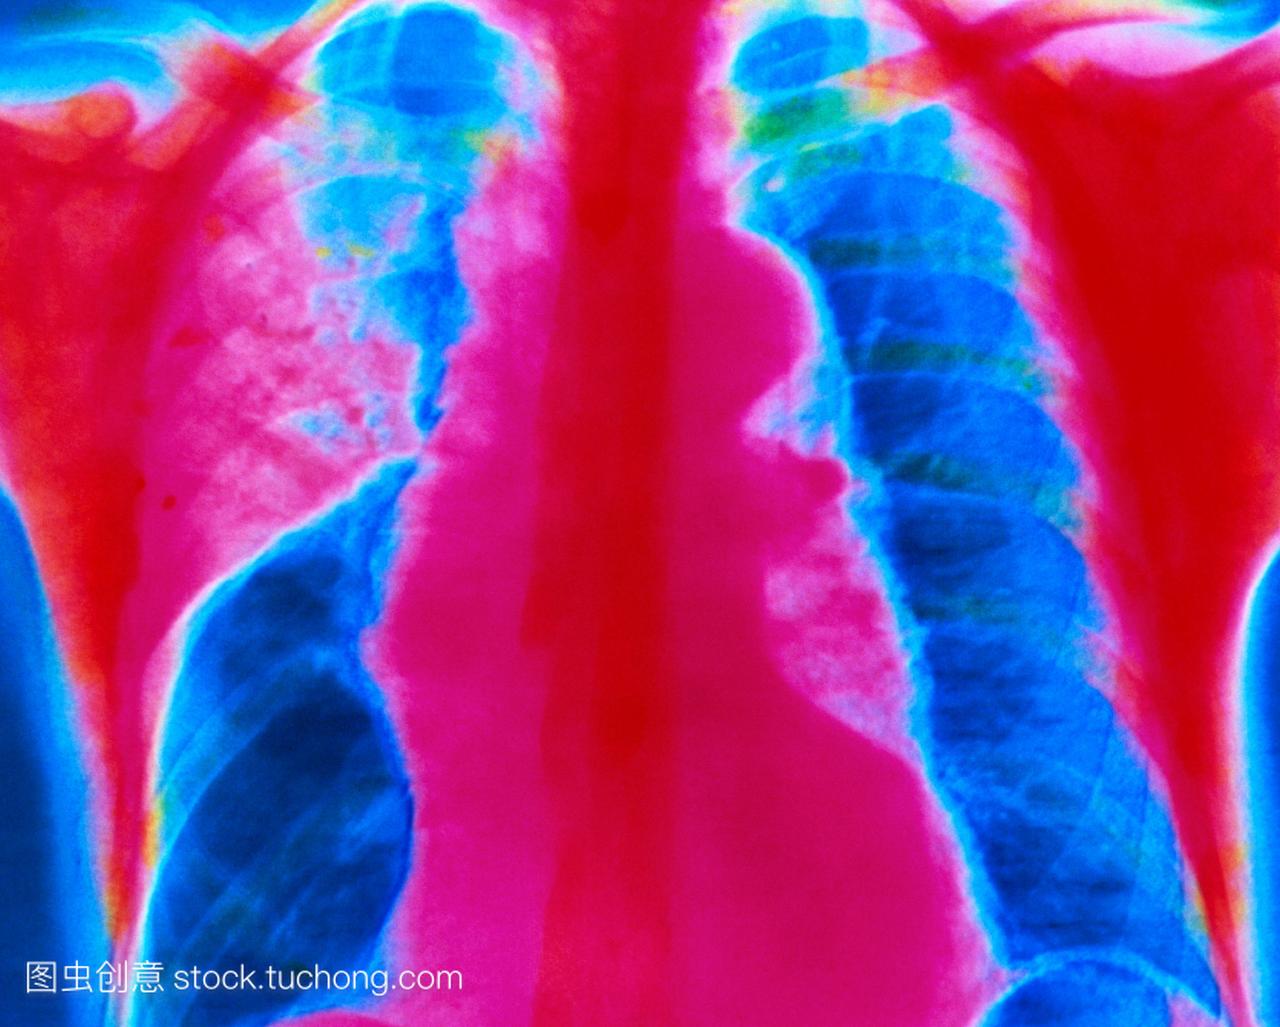 急性大叶性肺炎。彩色的胸部x光片显示急性肺